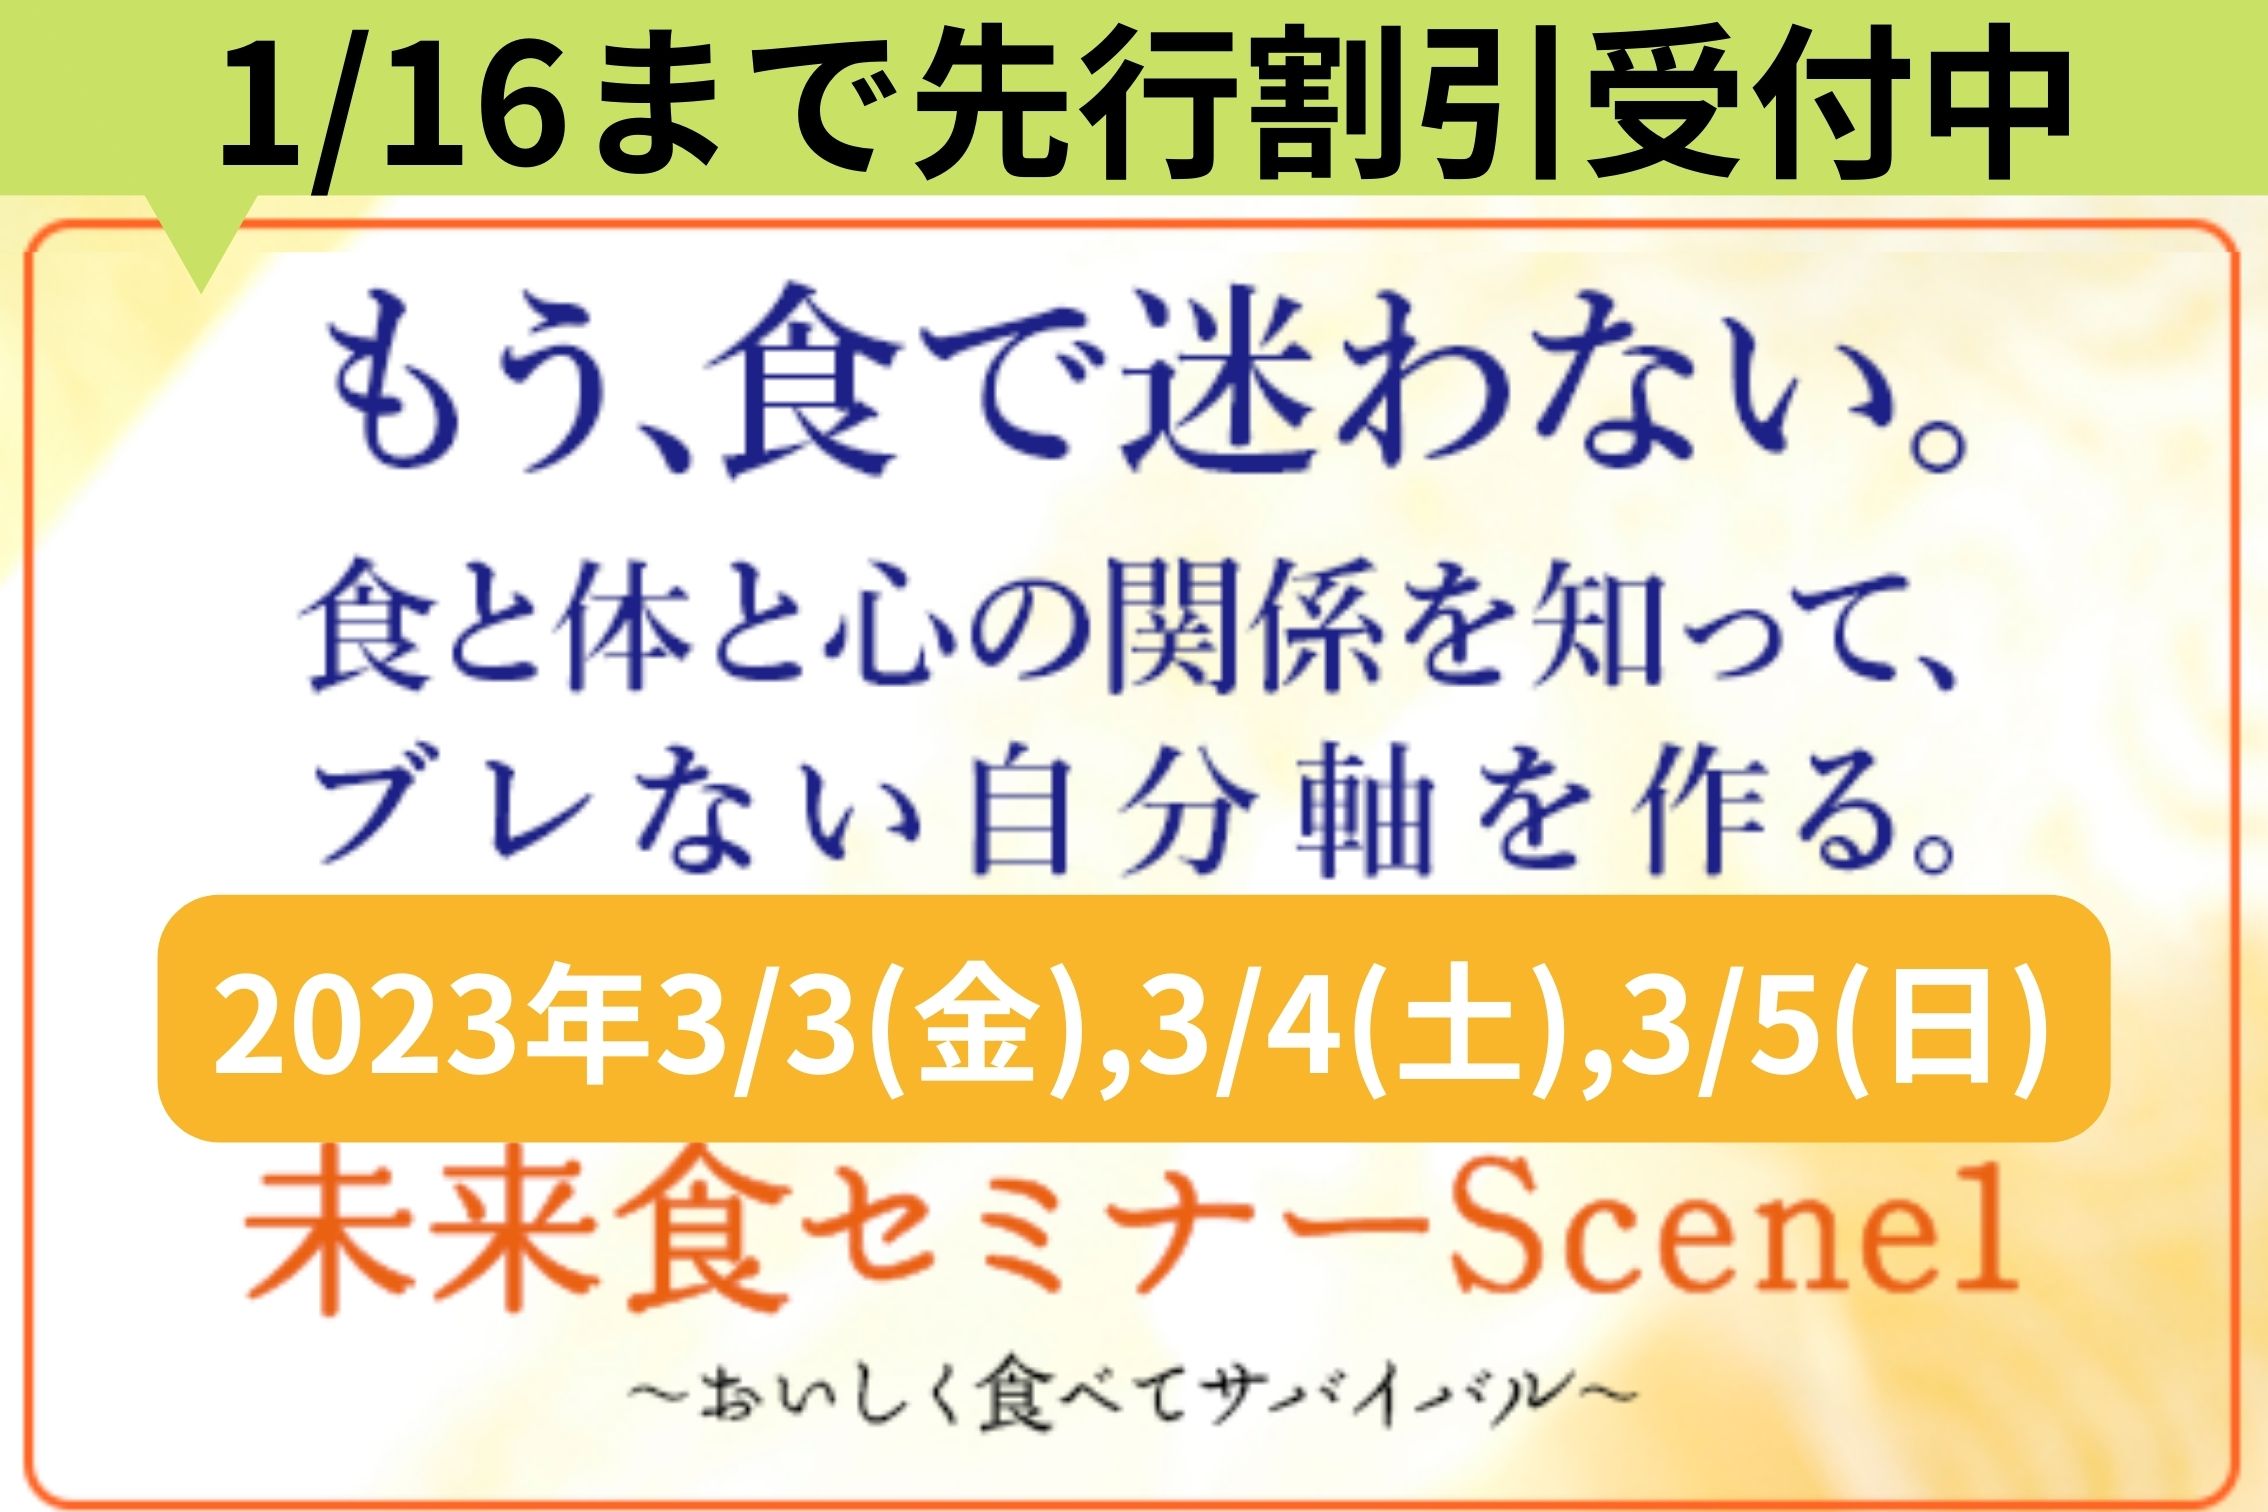 【先行募集】未来食セミナーScene1☆2023年春全国一斉開催スタート